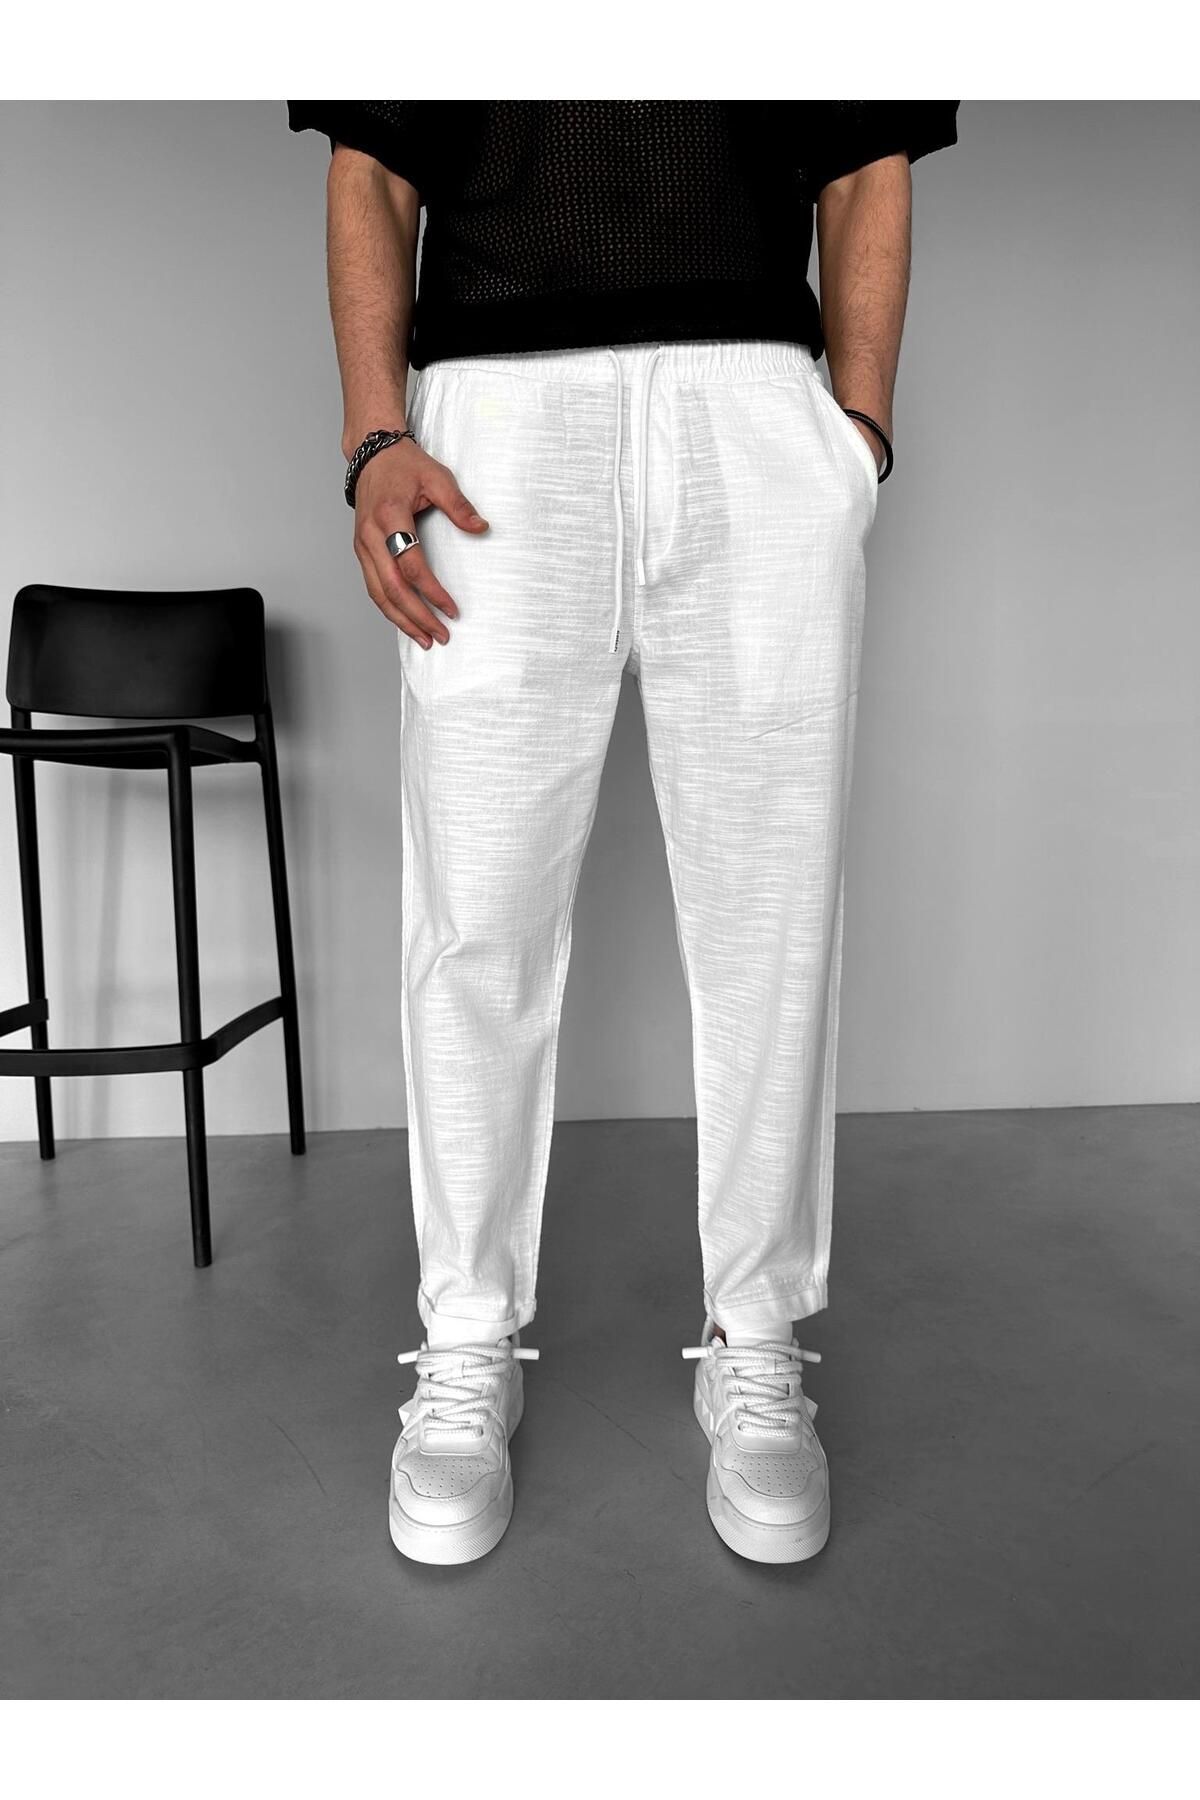 ablukaonline Rahat Kalıp Pamuklu Serin Tutan Beli Lastikli Yazlık Keten Pantolon Beyaz